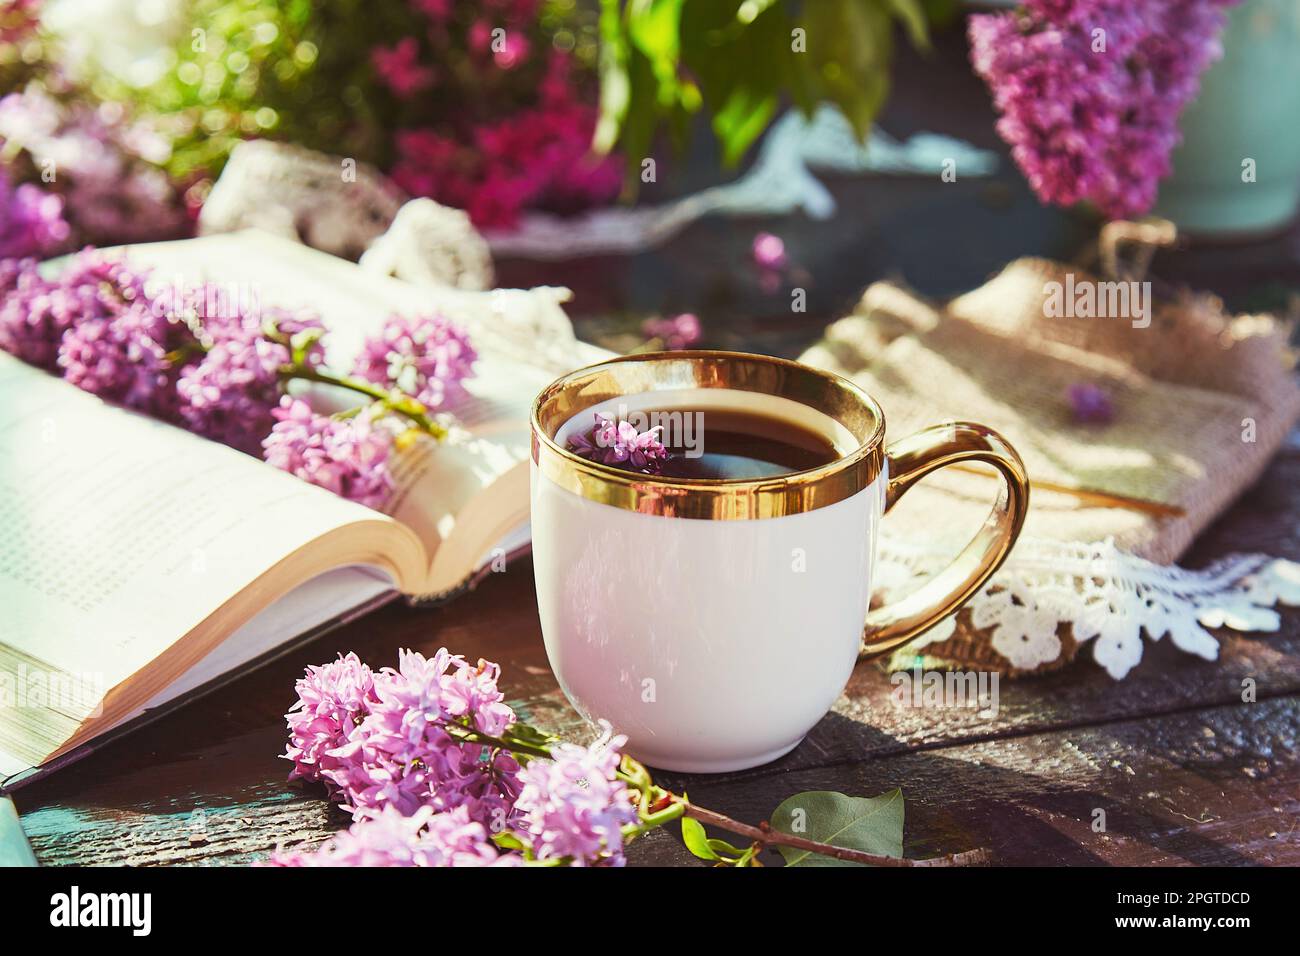 Style de vie typique de chalet - pause café avec une tasse de café, livre et fleurs lilas. Concept détente et loisirs. Banque D'Images